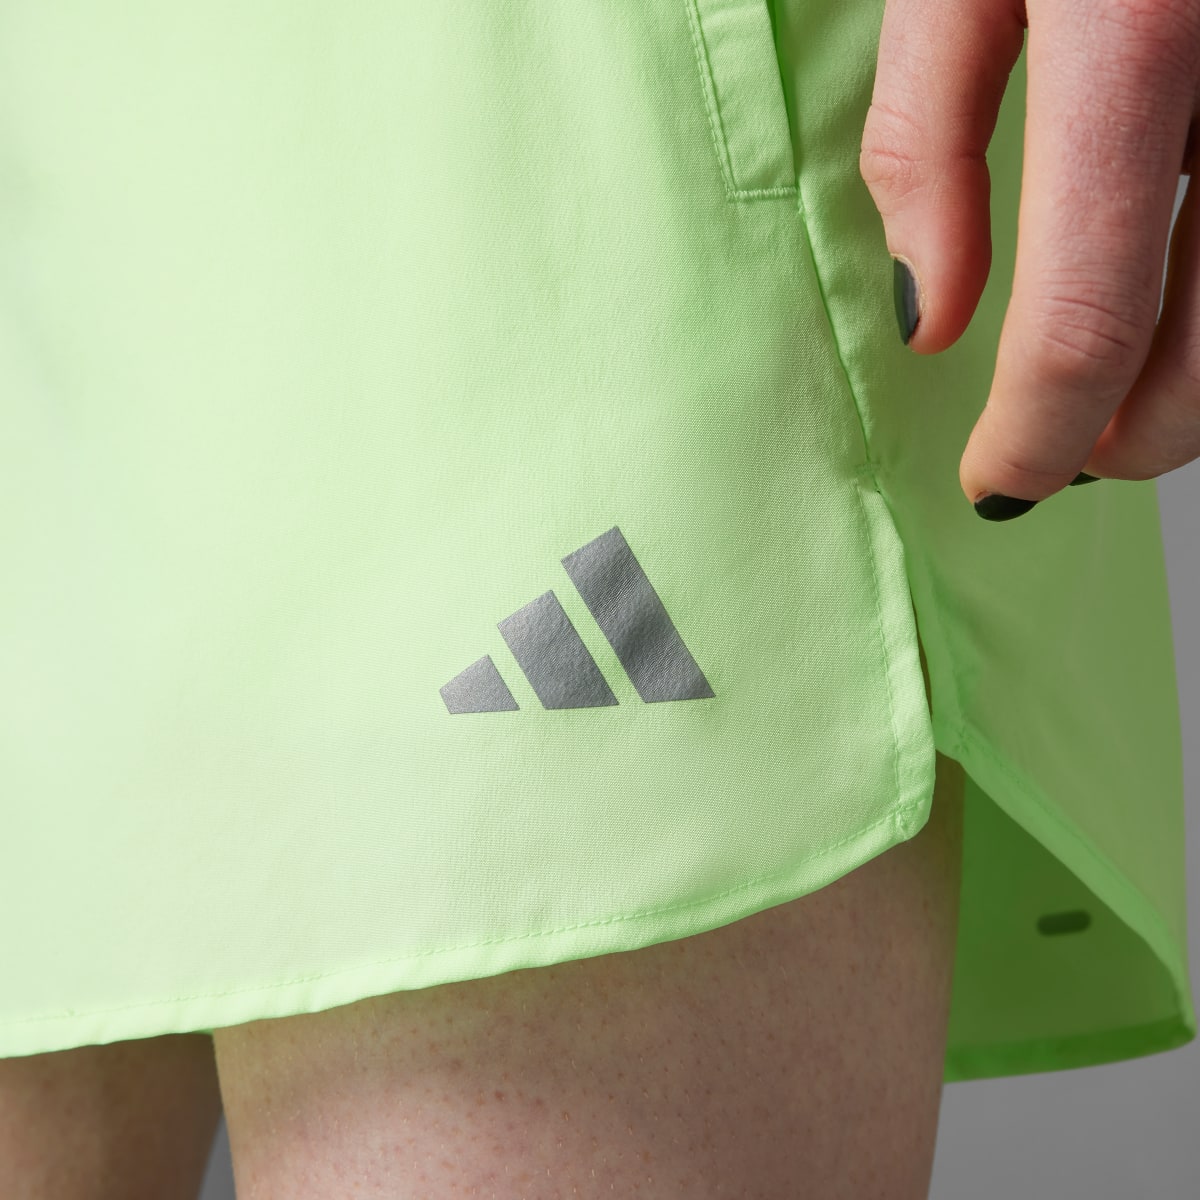 Adidas Run It Shorts. 4